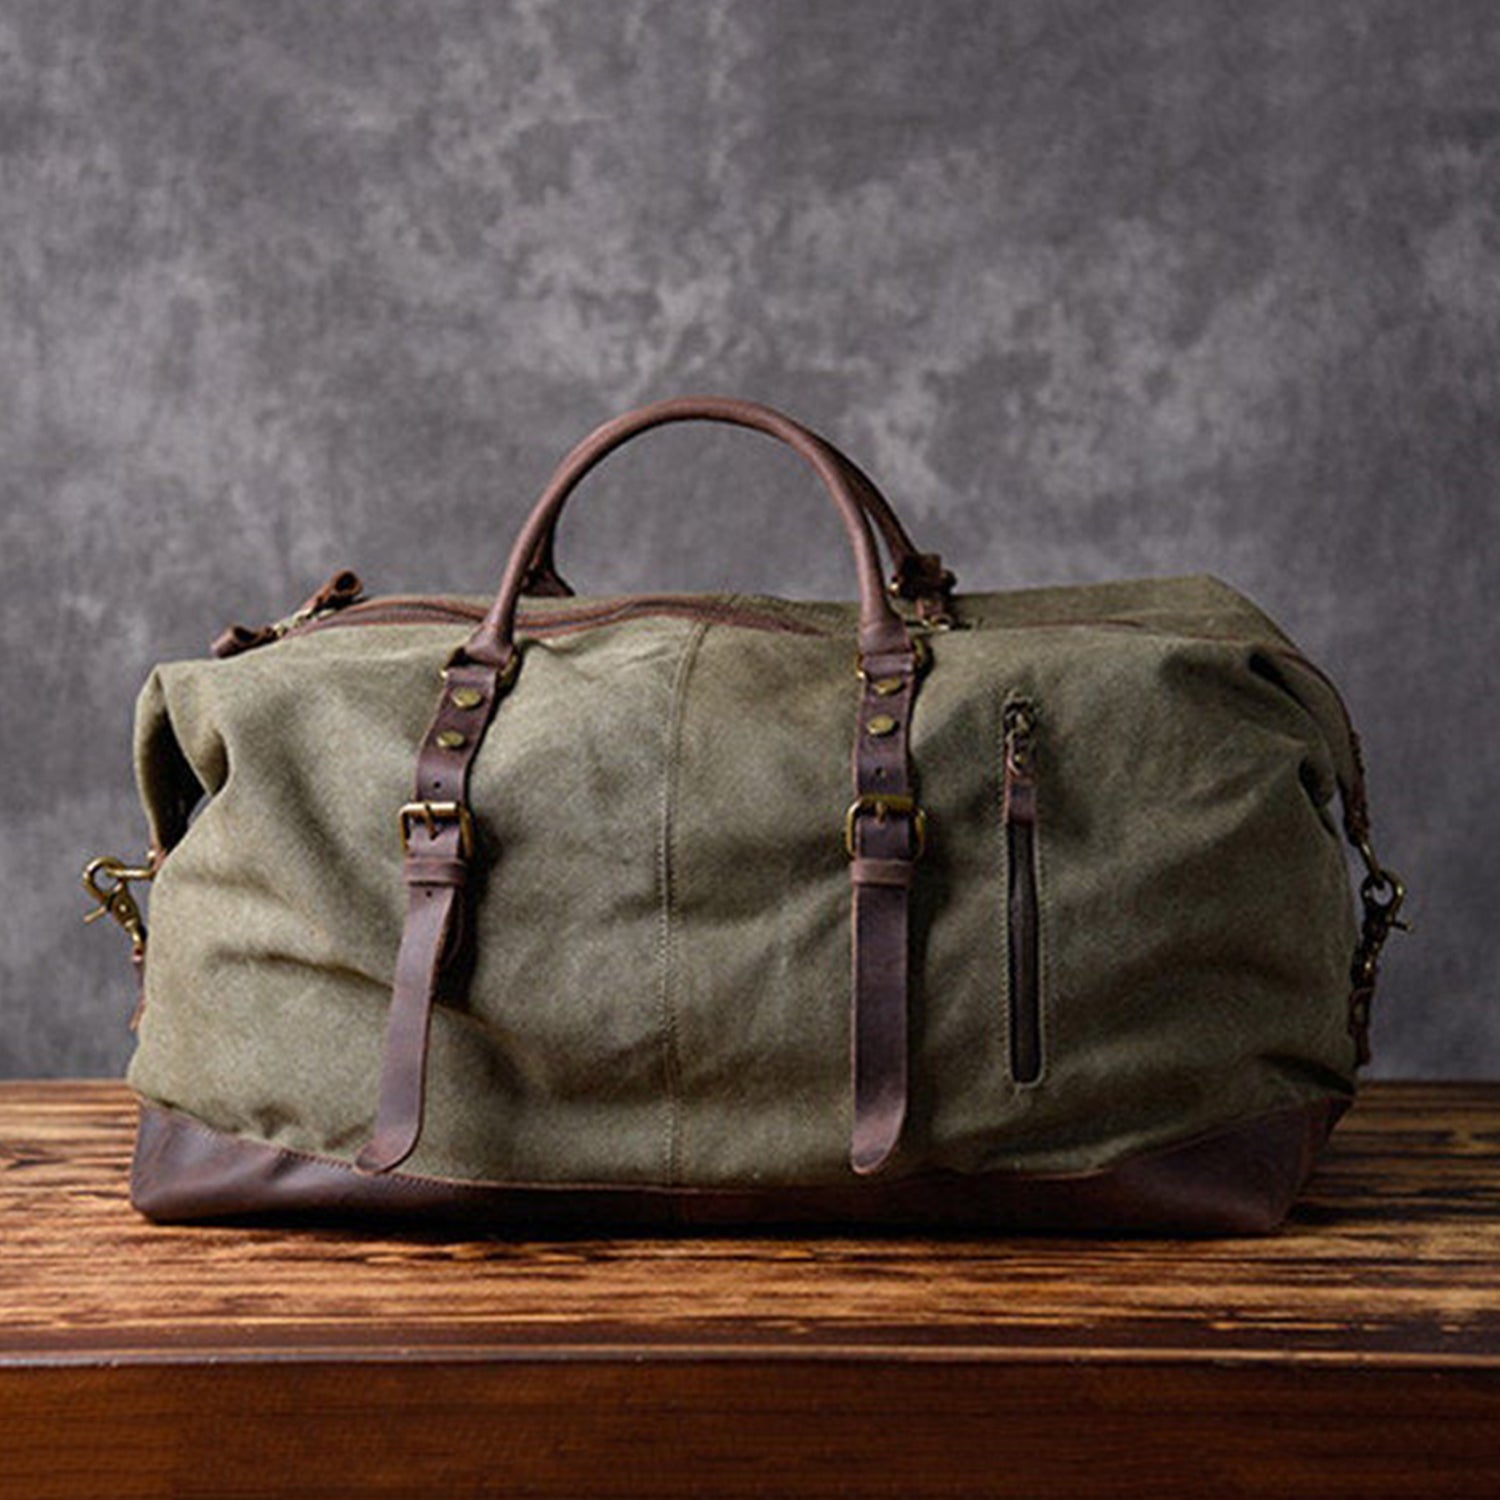 Canvas Duffle Bag - Vintage & Durable Travel Bag